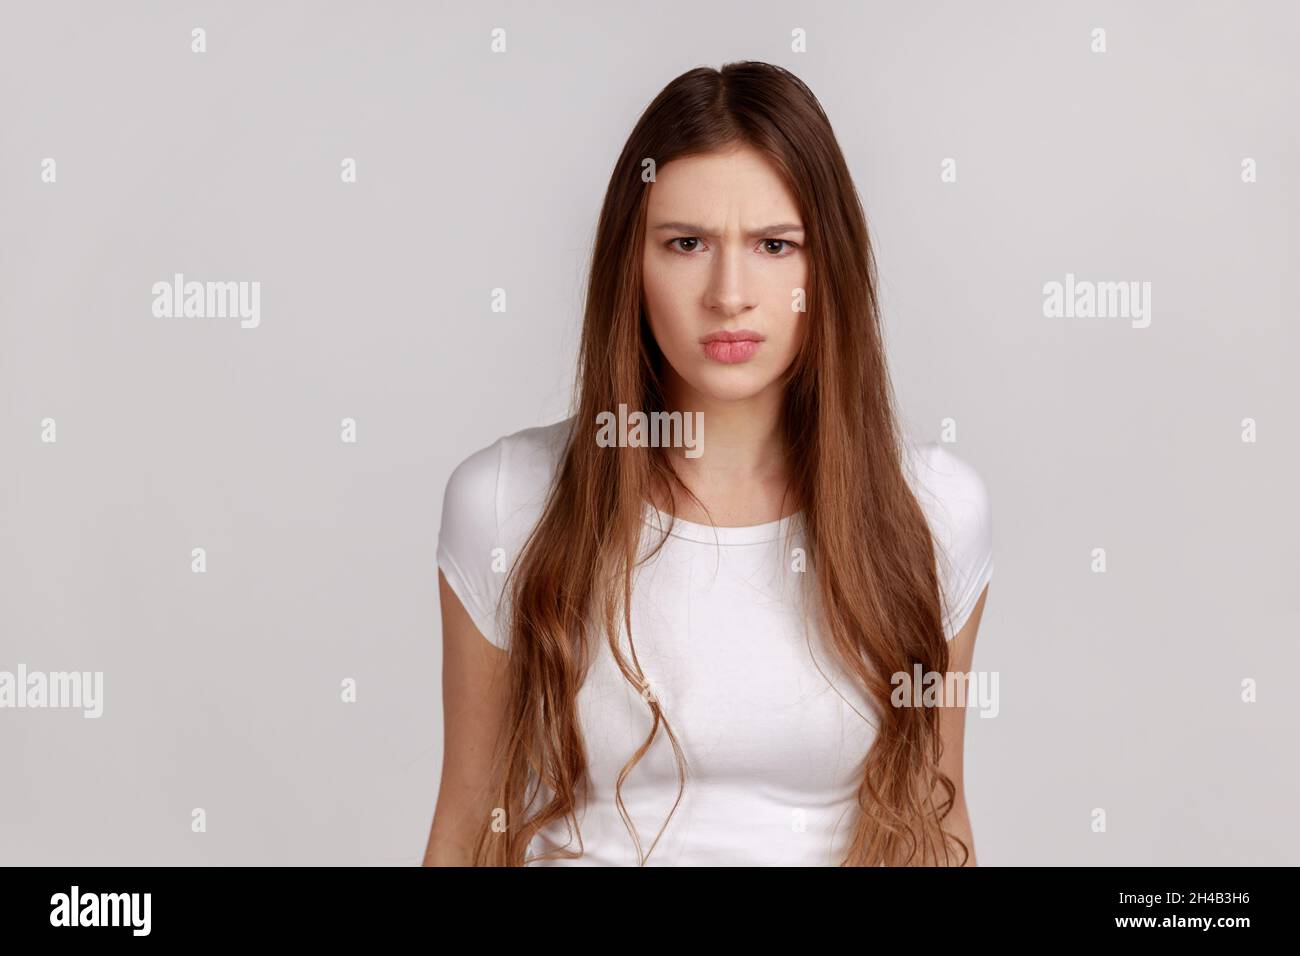 Porträt einer jungen erwachsenen Frau, die mit geballten Zähnen und wütender Grimasse im Gesicht steht und sich als aggressiv ausgibt und weißes T-Shirt trägt. Innenaufnahme des Studios isoliert auf grauem Hintergrund. Stockfoto